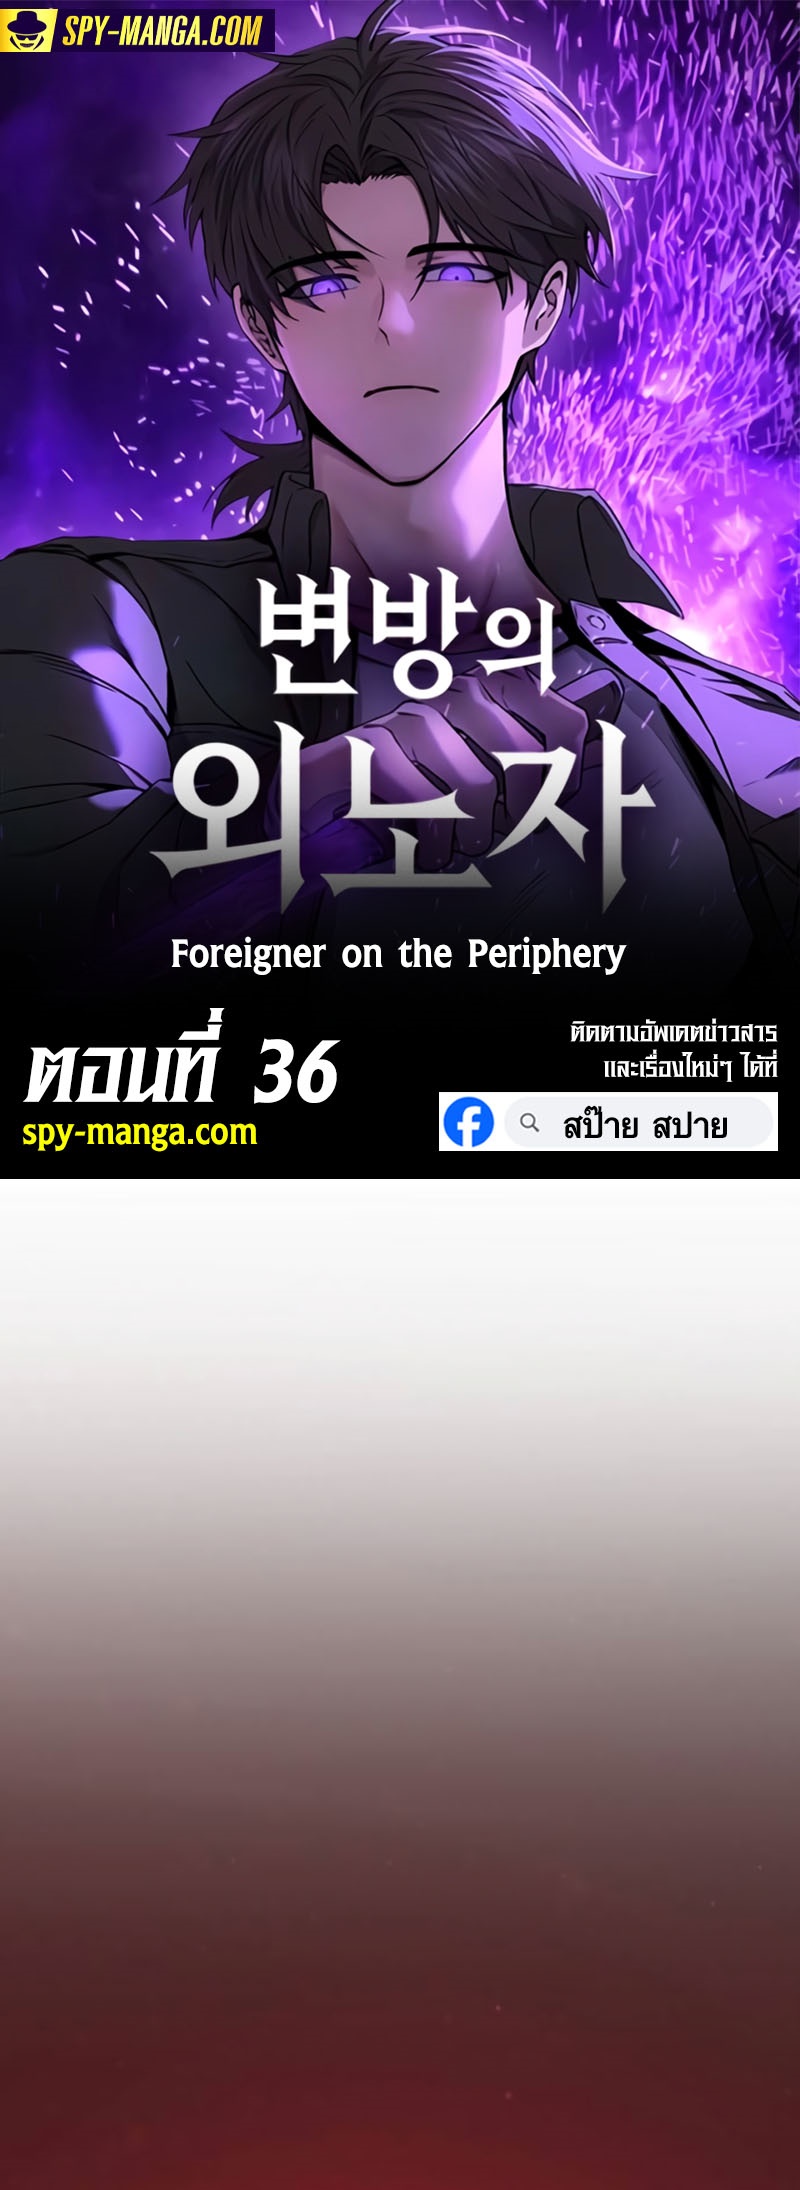 อ่านมันฮวา เรื่อง Foreigner on the Periphery 36 (01)